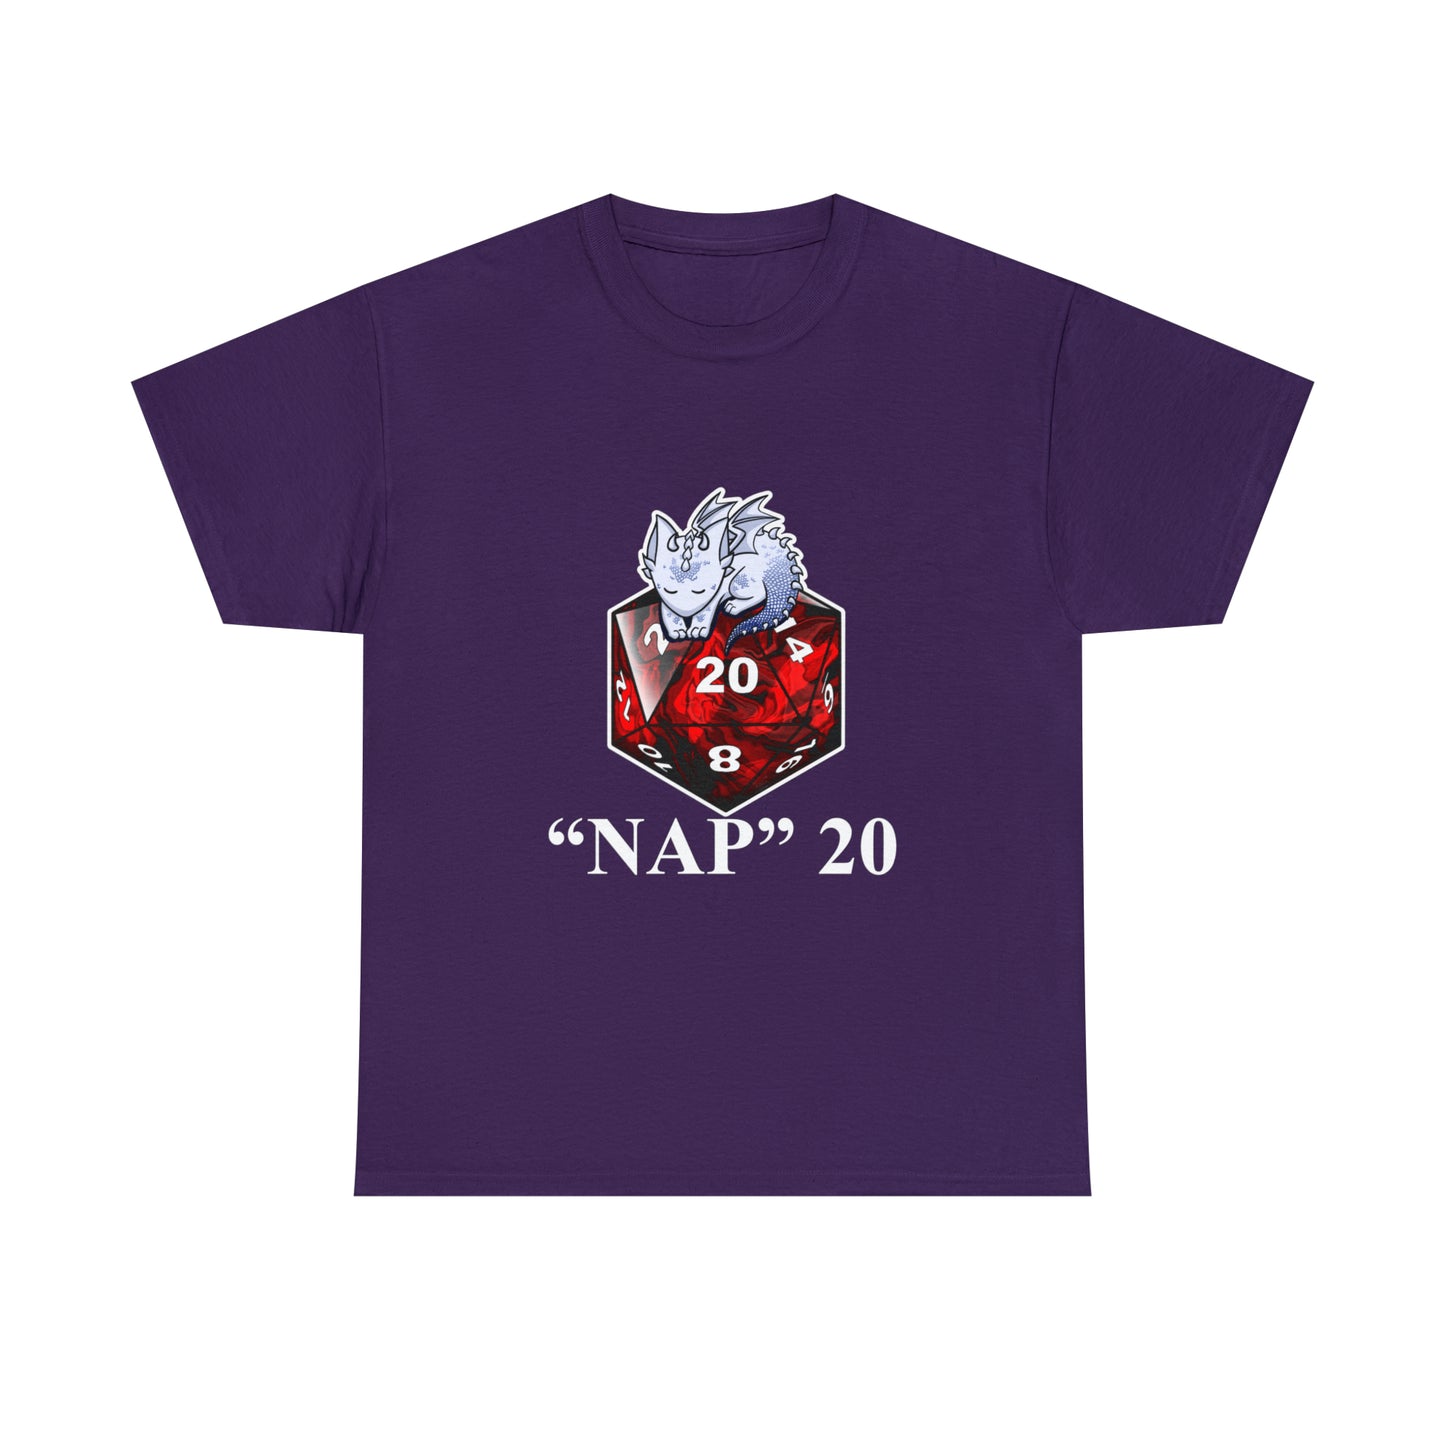 Nap 20 Tee Shirt